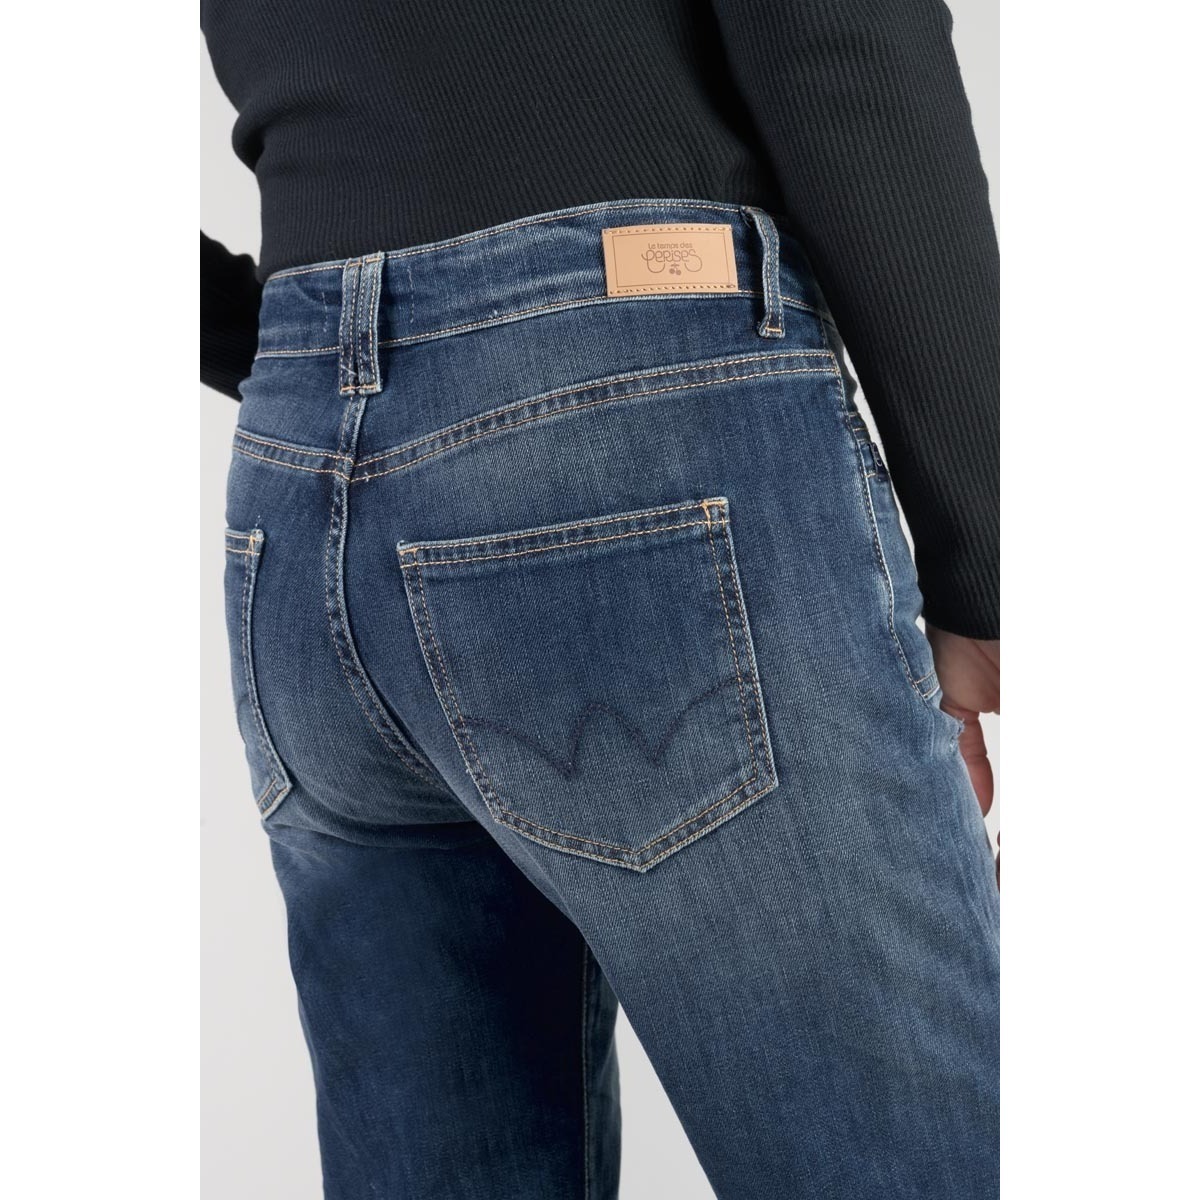 Le Temps des Cerises Bleu Fafa 400/18 mom taille haute 7/8ème jeans destroy bleu wvKiLpYz